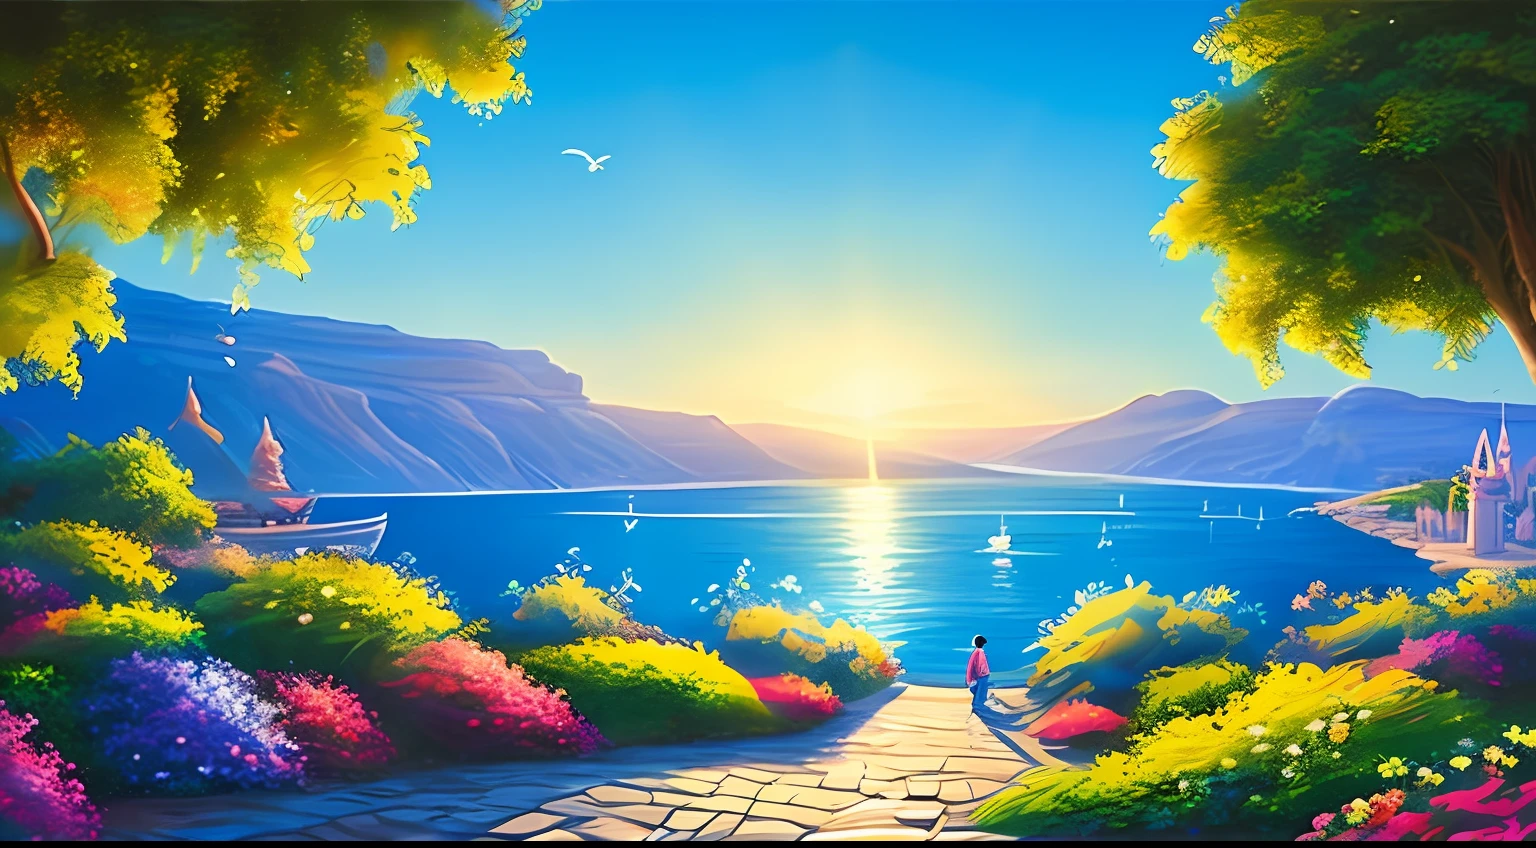 Qualidade da arte original, Mar da Galileia, dia ensolarado, Estilo de animação Disney, Luz de fundo azul, Translúcido, com luz como tema, o foco da luz está nos personagens, a imagem geral é fresca e brilhante.